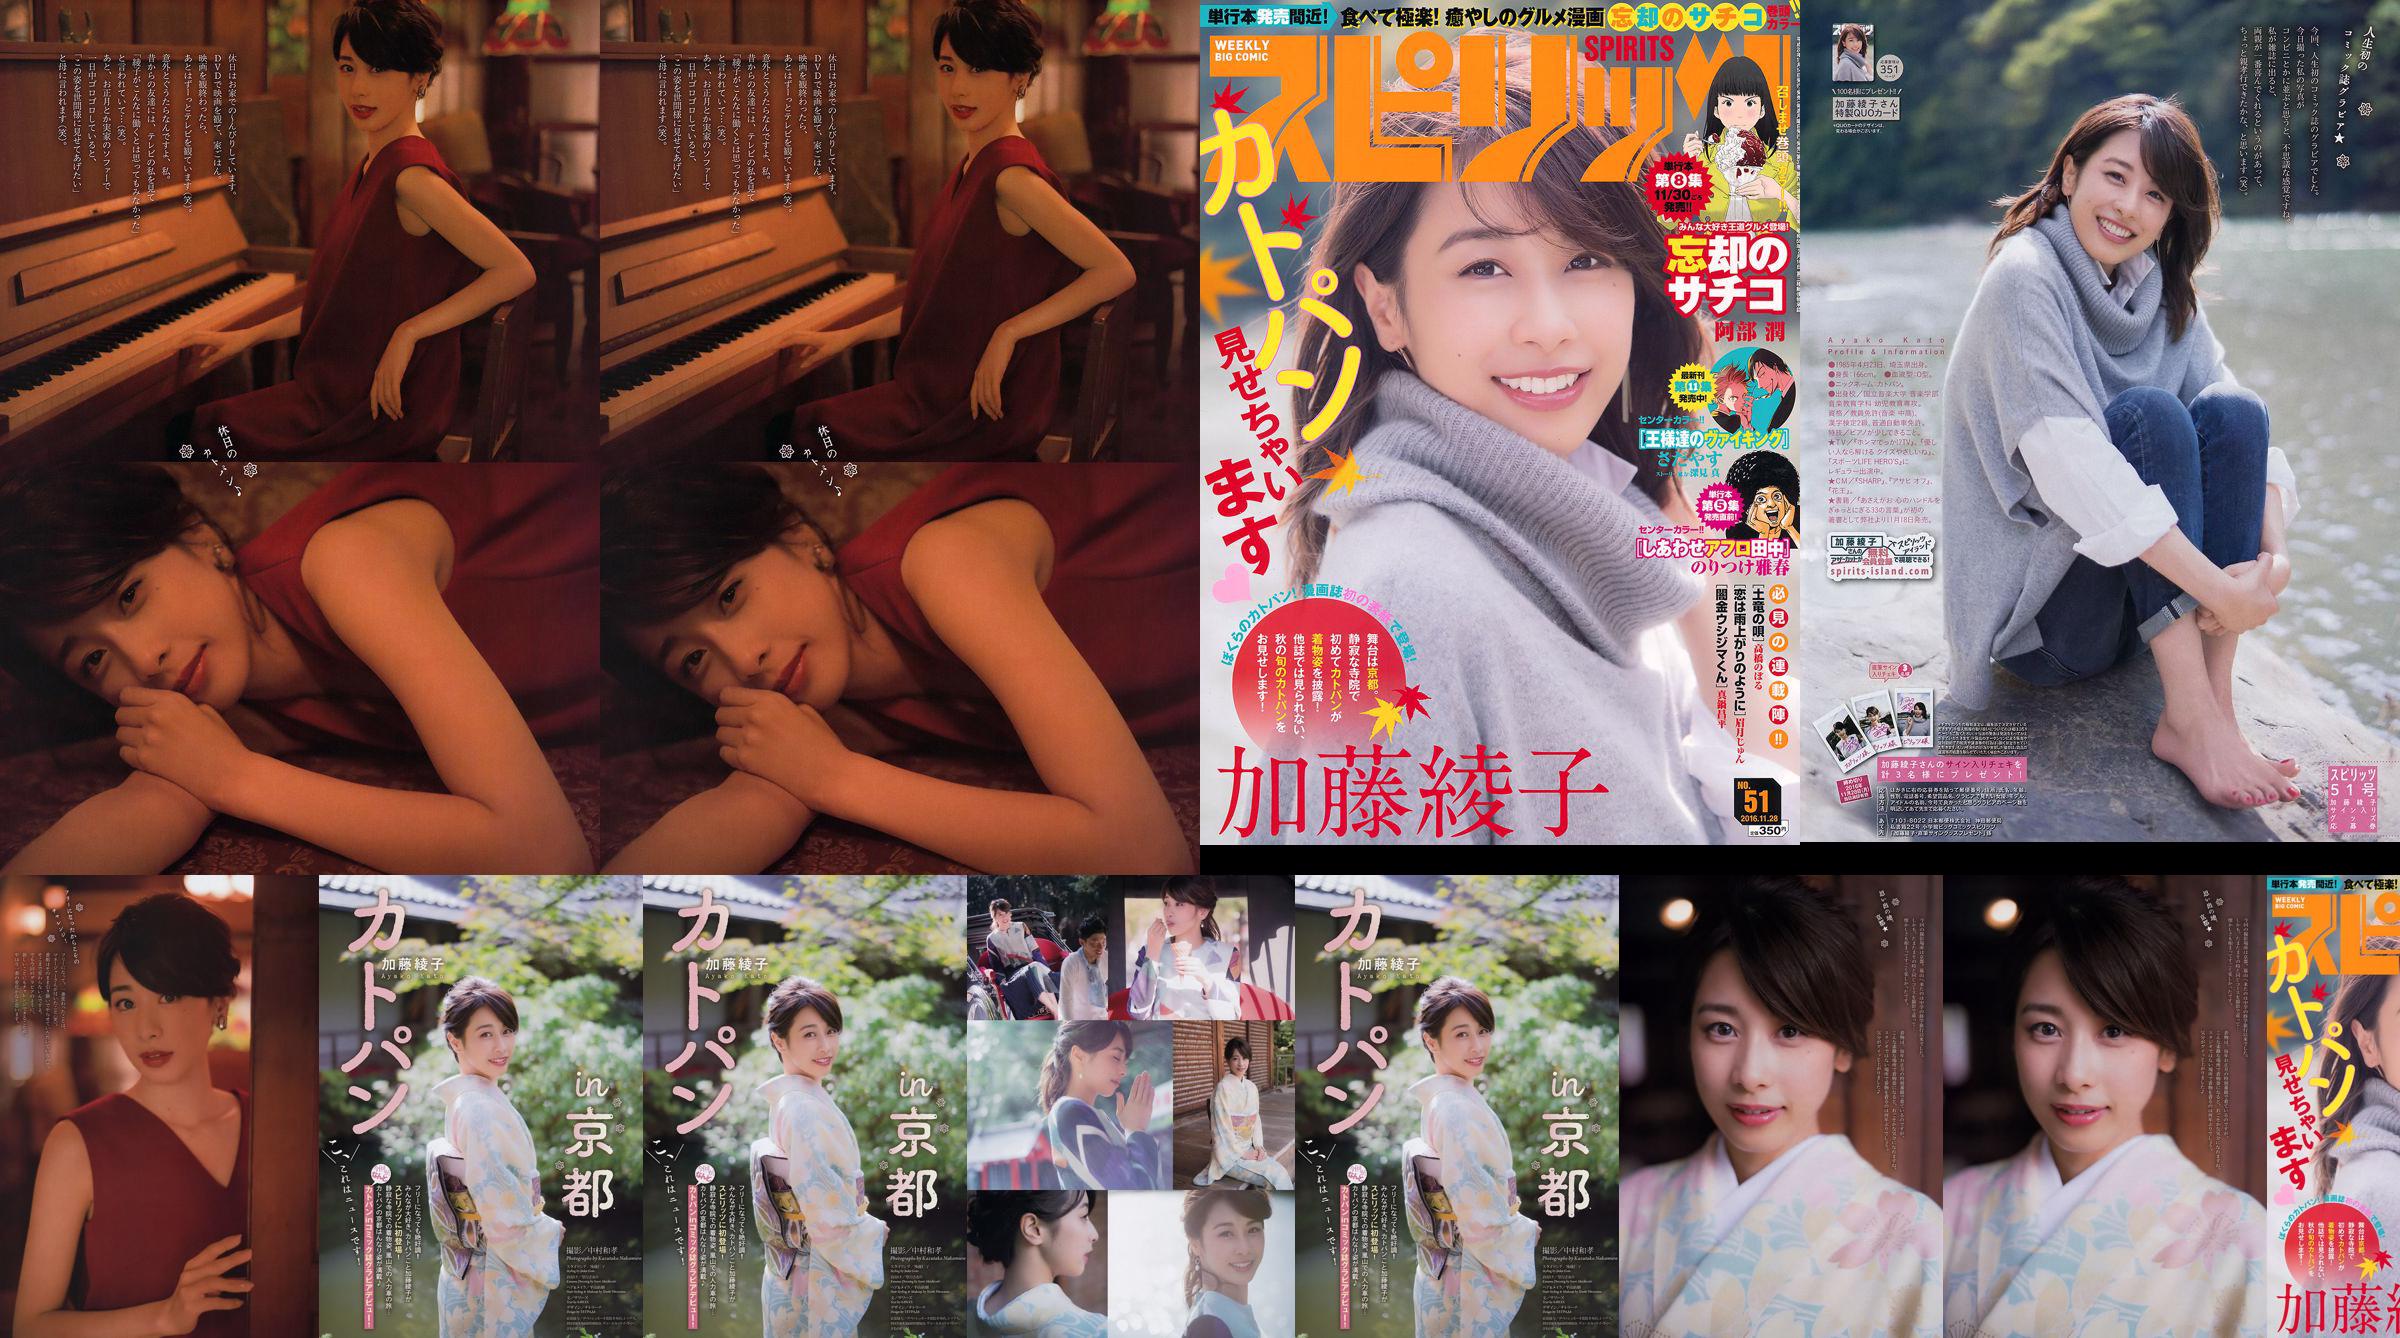 [Weekly Big Comic Spirits] Ayako Kato 2016 No.51 Photo Magazine No.45c863 Pagina 1